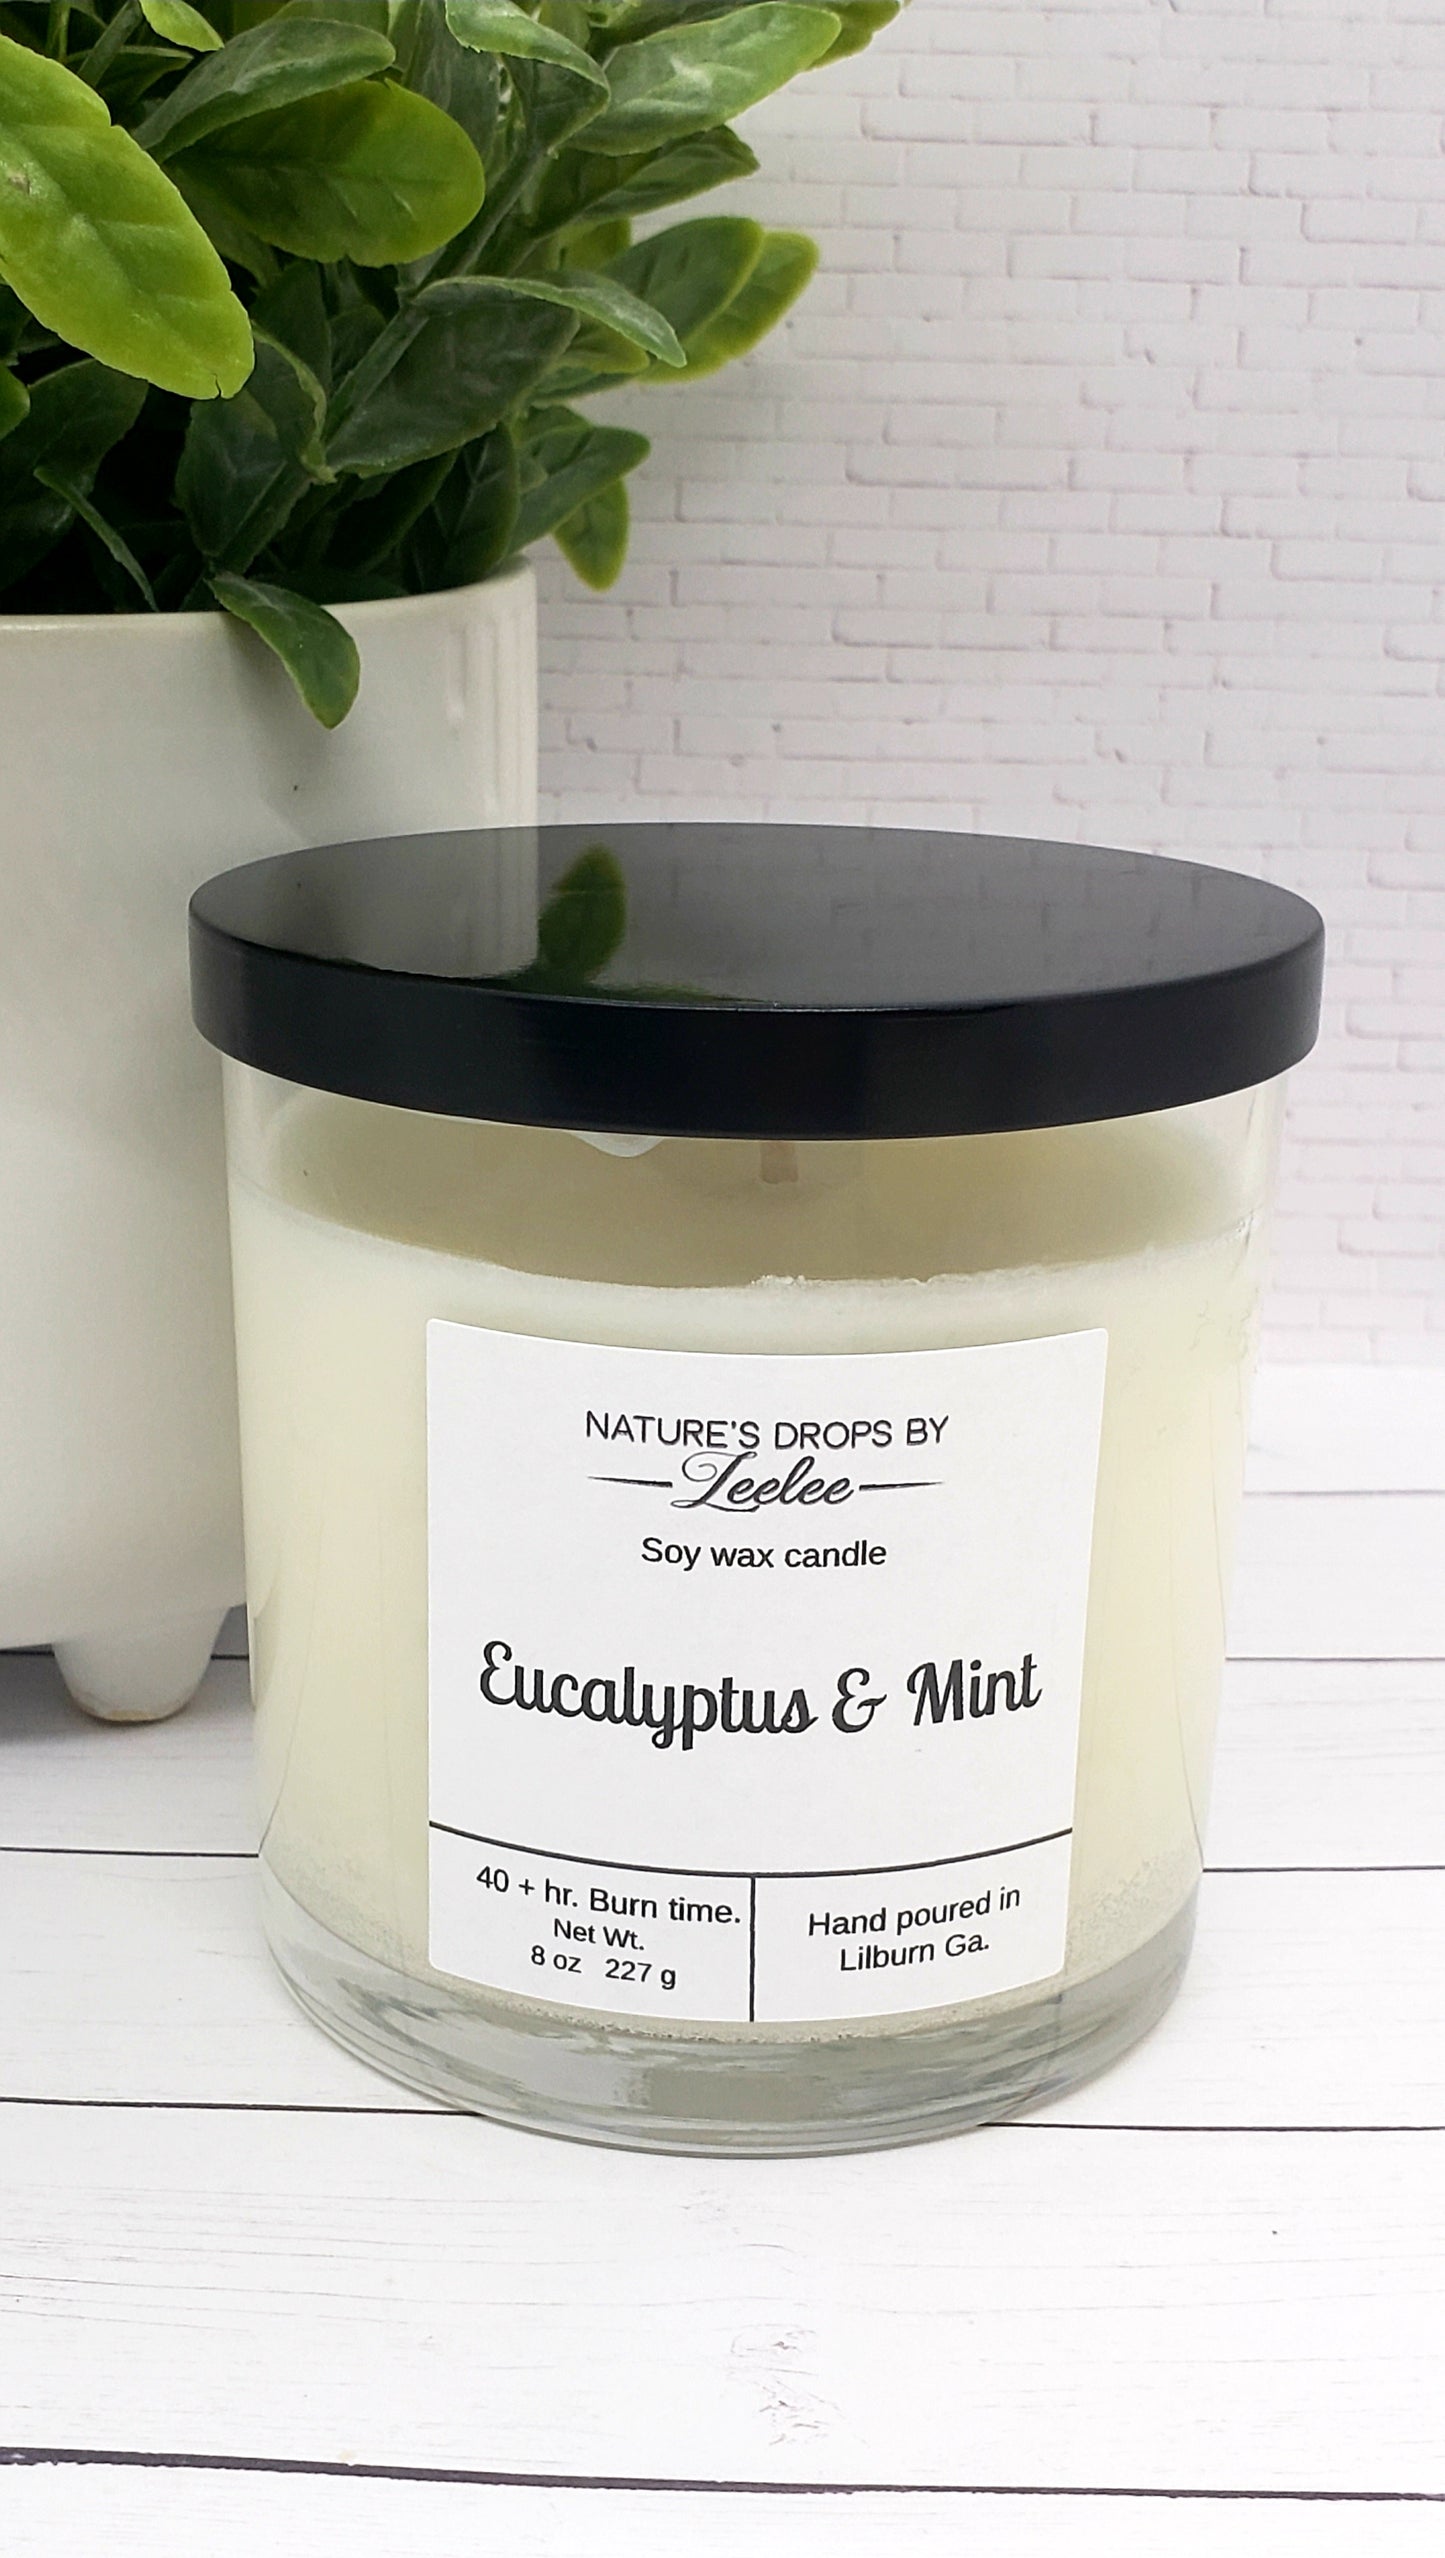 Eucalyptus & Mint - candle/wax melt